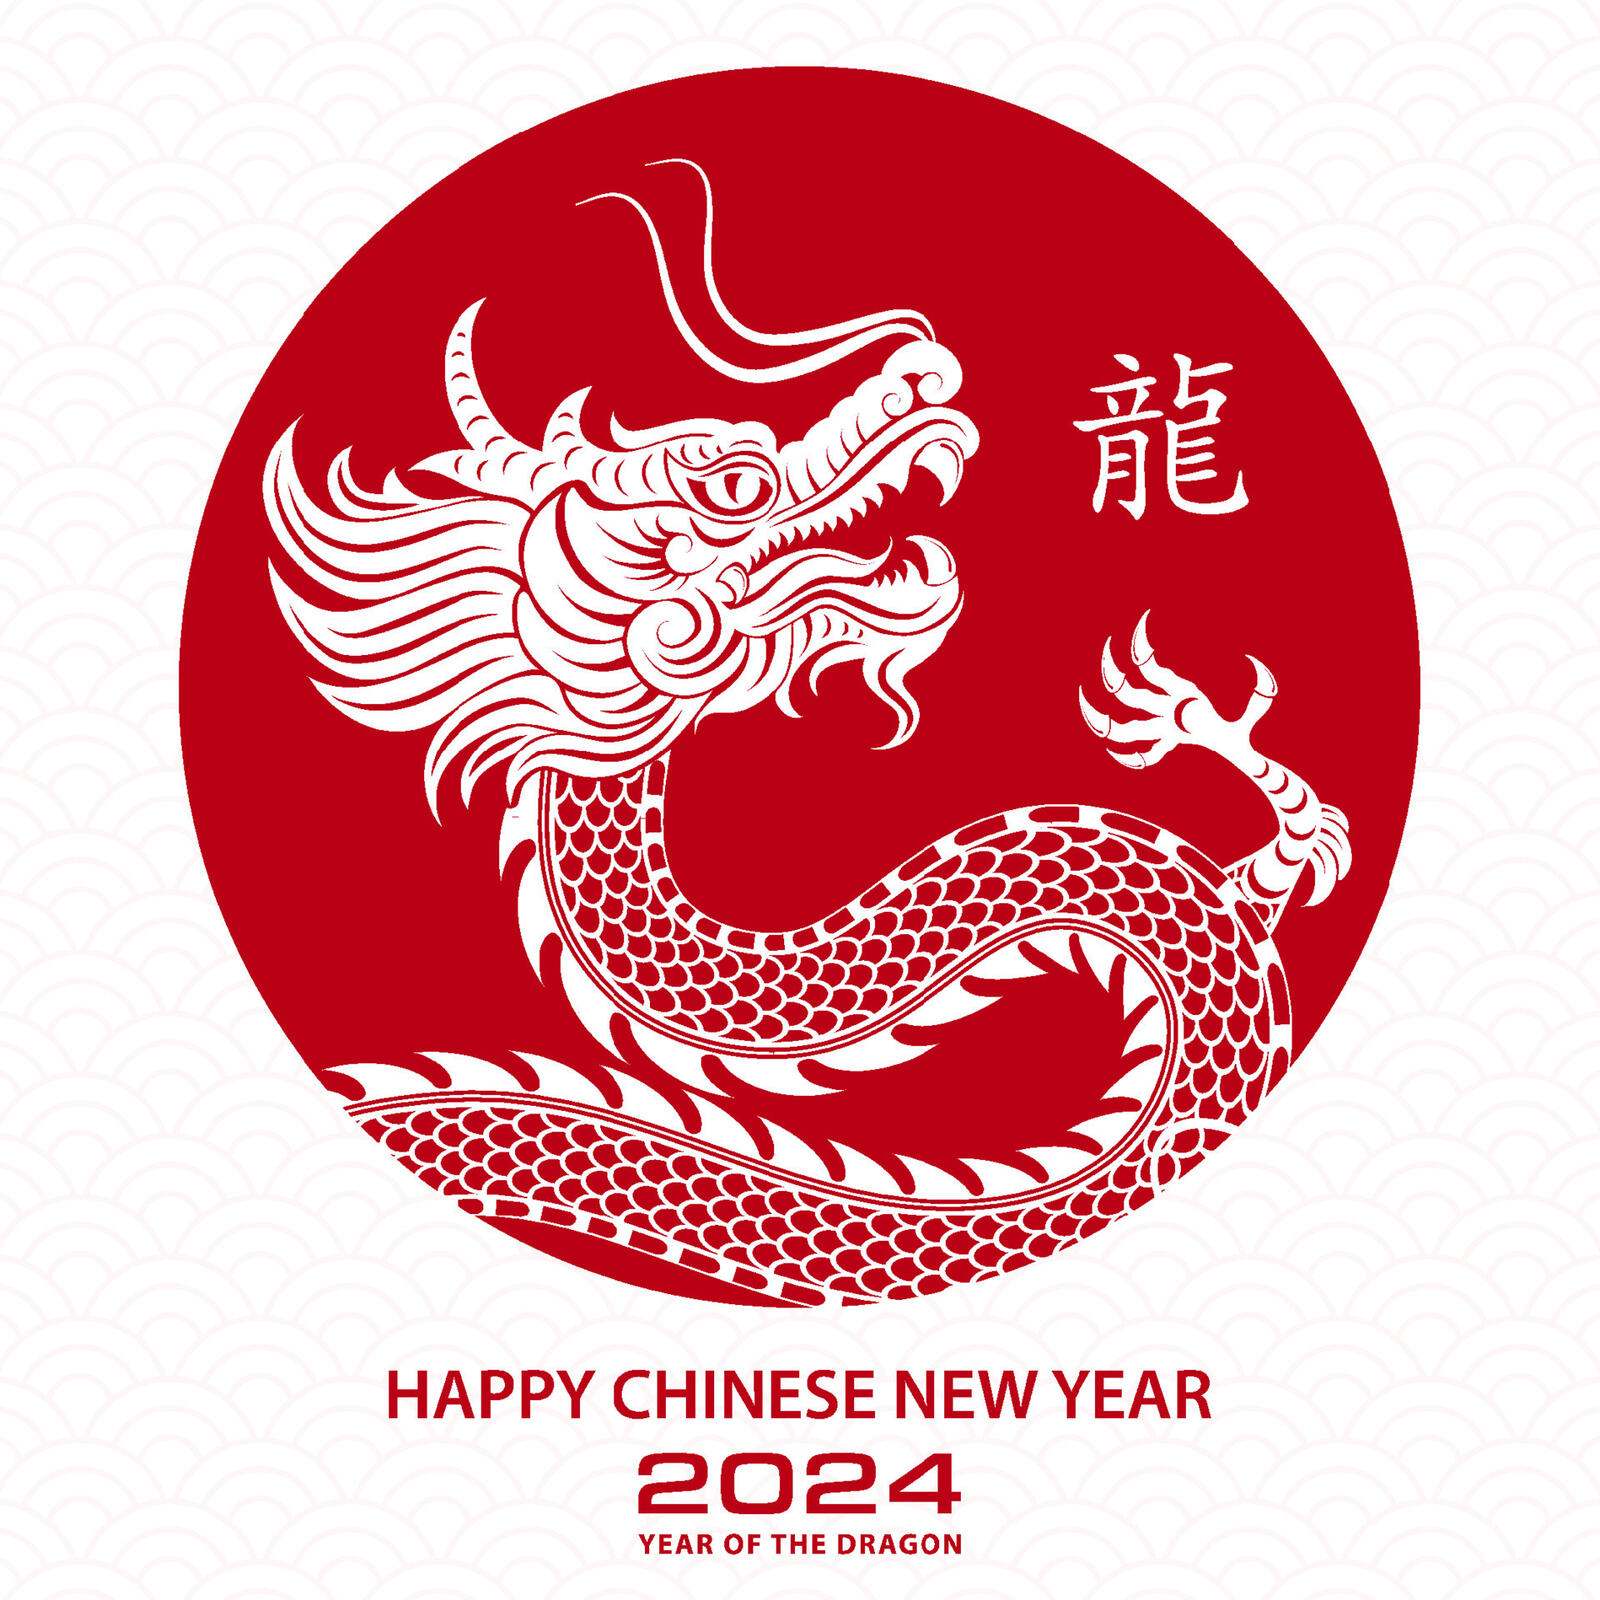 Бесплатное фото Китайский новогодний дракон 2024 года